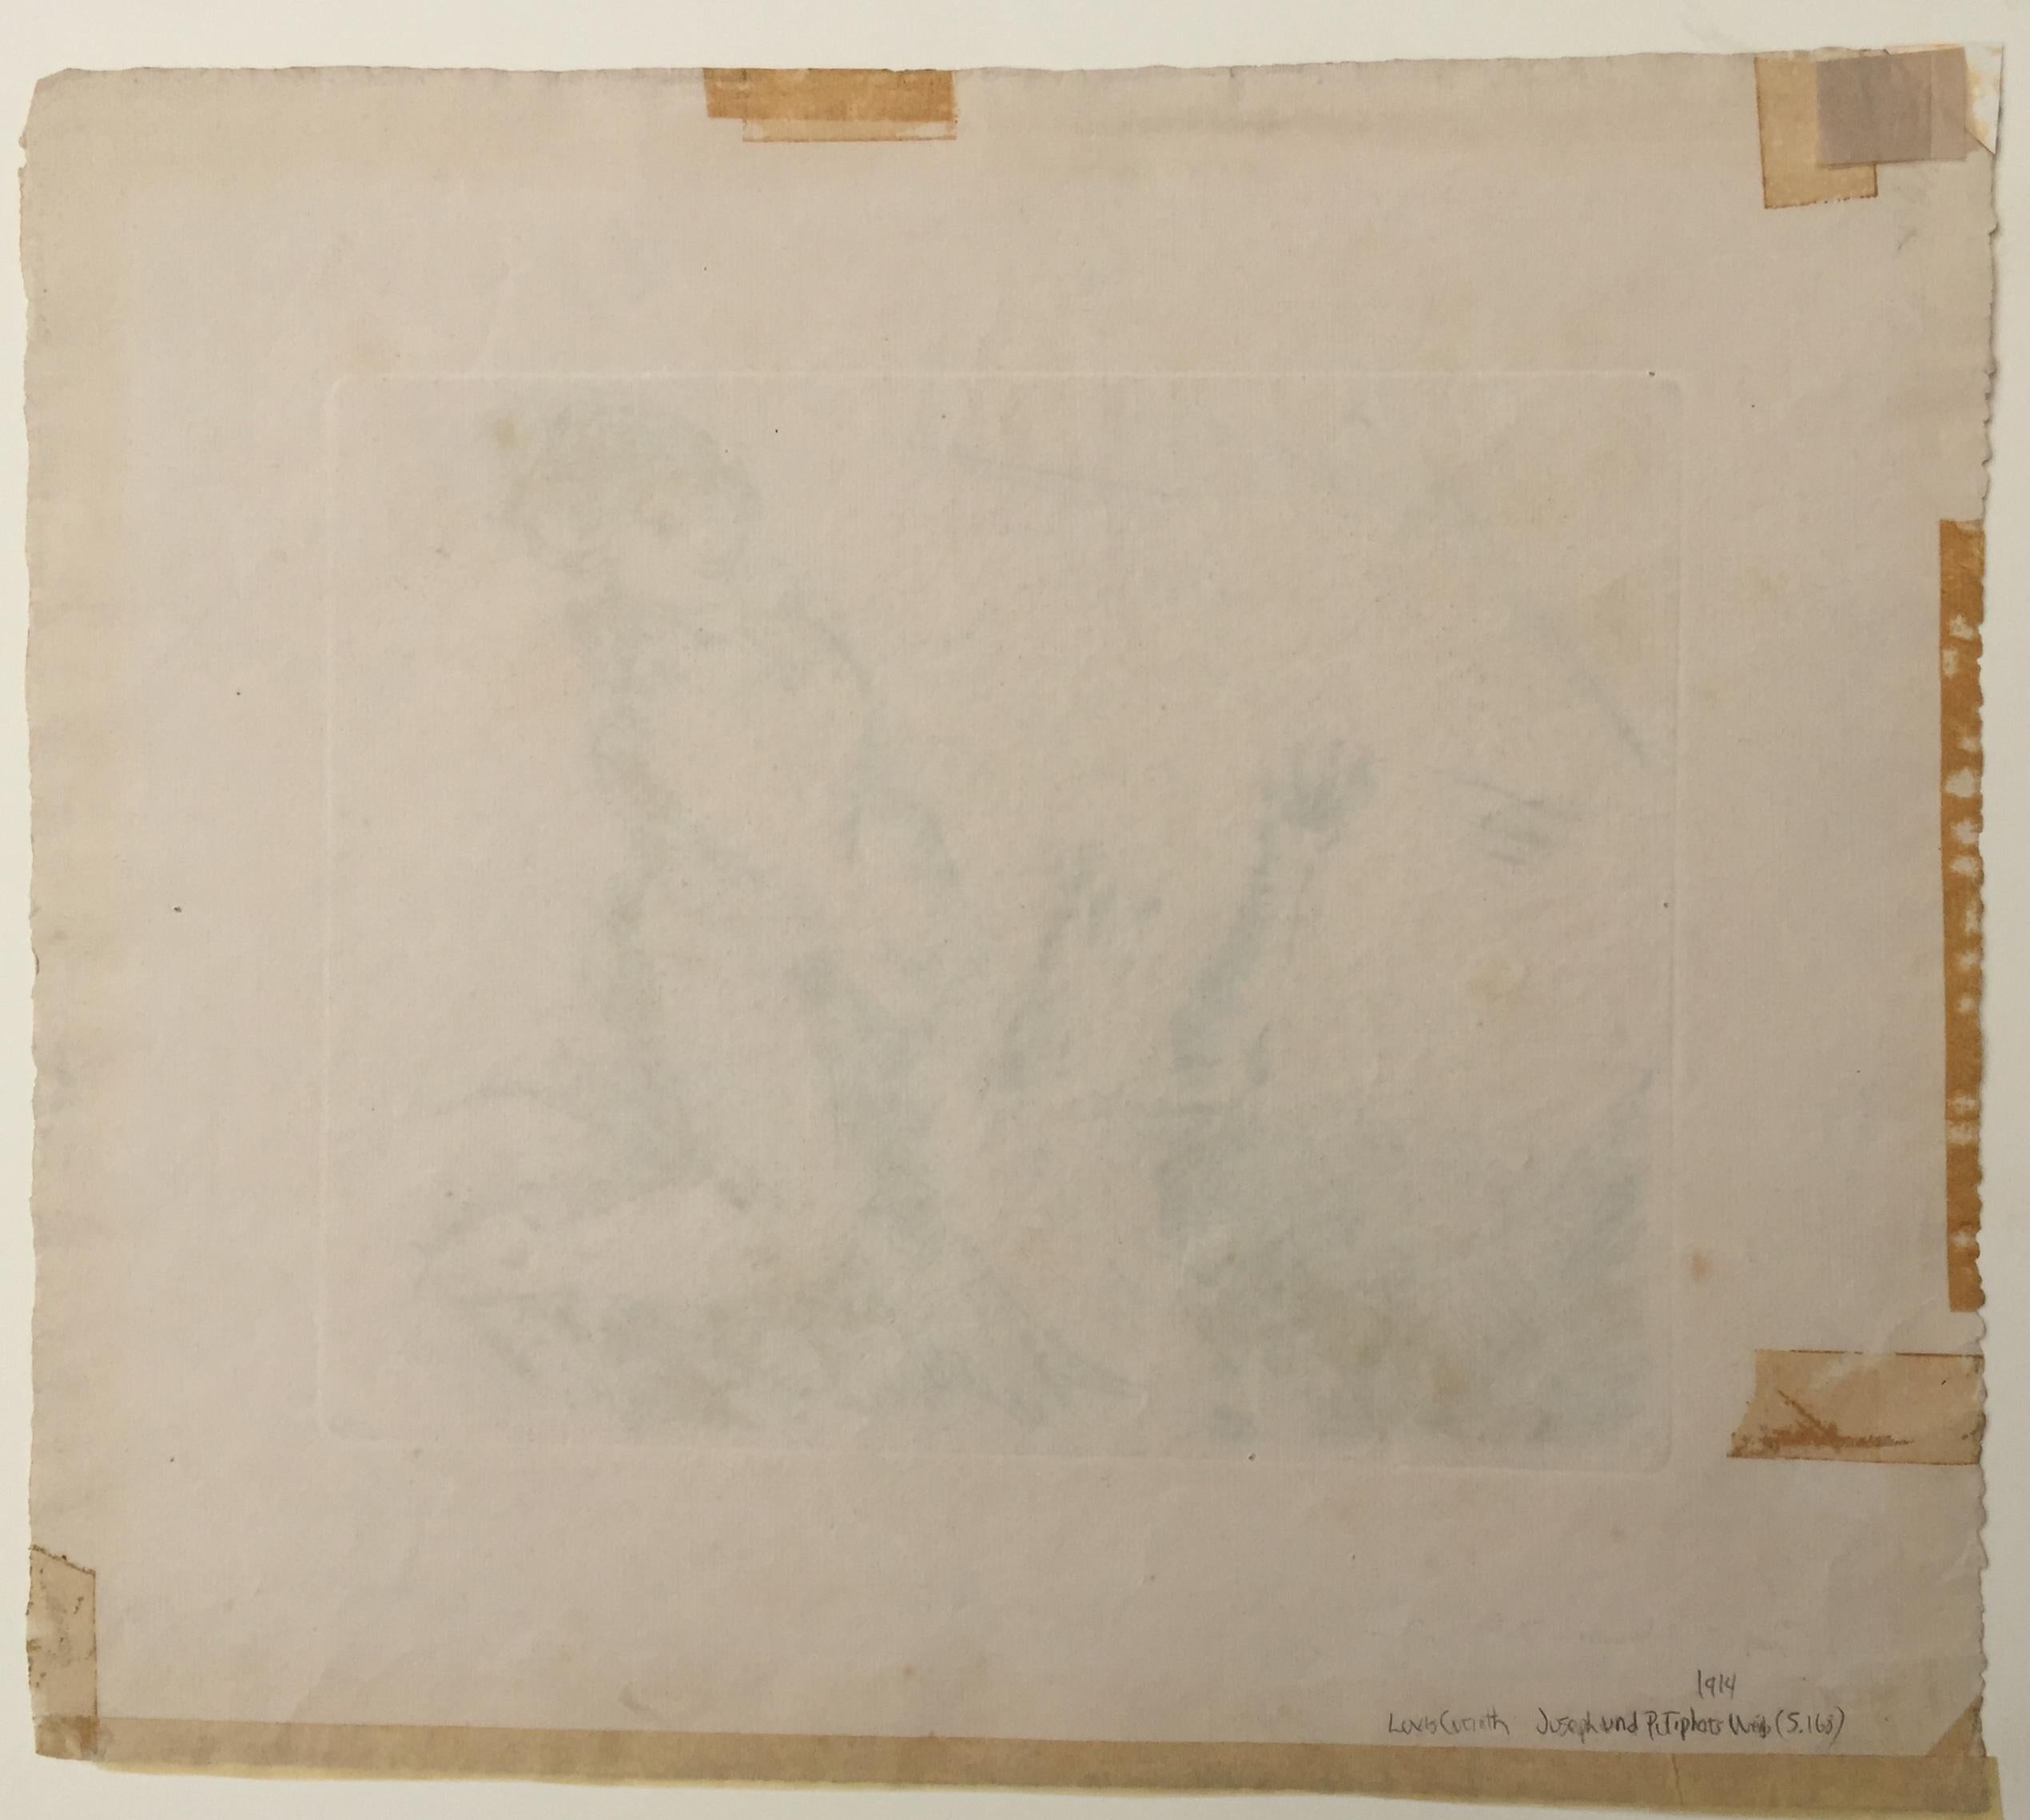 Joseph und Potiphar's Wife 1 (Expressionismus), Print, von Lovis Corinth